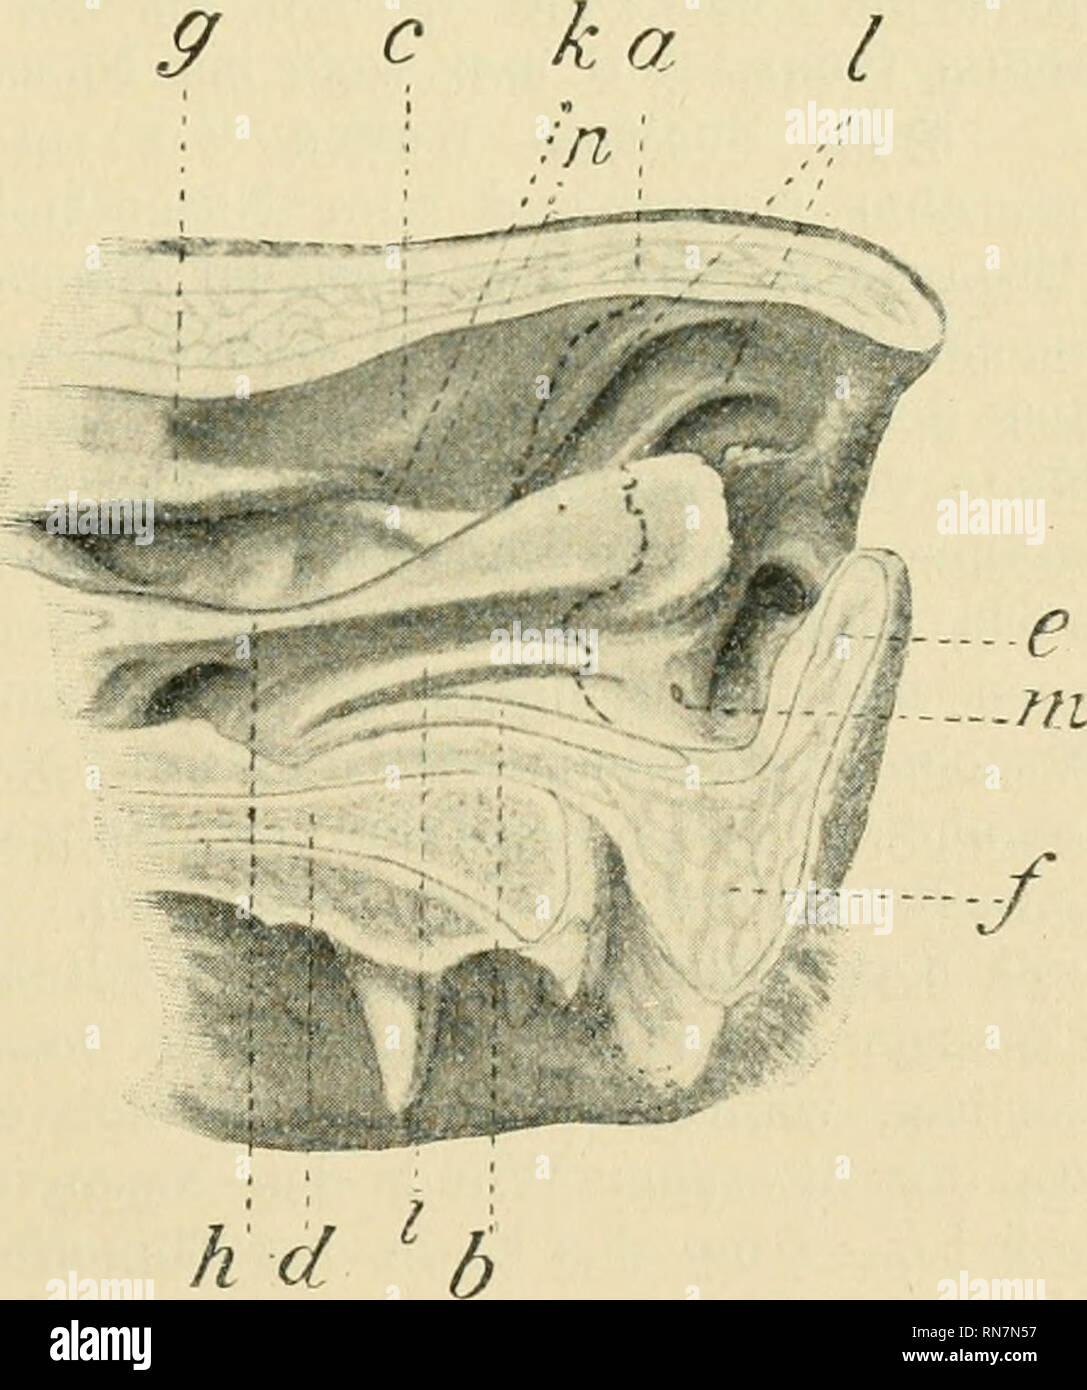 . Anatomischer Anzeiger. Anatomia, comparativo, Anatomia, comparativo. liehen Nasenhöhle liegende Ergänzungsfalte der dorsalen Nasenmuschel (gerade Falte, plica recta) geht, sich mehr und mehr verjüngend, in ein im vestibolo nasi gelegenes Fältchen über das dorsale schräg- und nasenlochwärts verläuft und sich an der Grenze zwischen lateraler Nasenwand und Nasendach in 7 - 8 strahlenförmig divergierende Fält- chen auflöst. In der eigentlichen Nasenhöhle verläuft, wie nebenbei bemerkt werden mag, zwischen der Plica alaris und der geraden Falte mit letzterer parallel und anfänglich von ihr verdeck Foto Stock